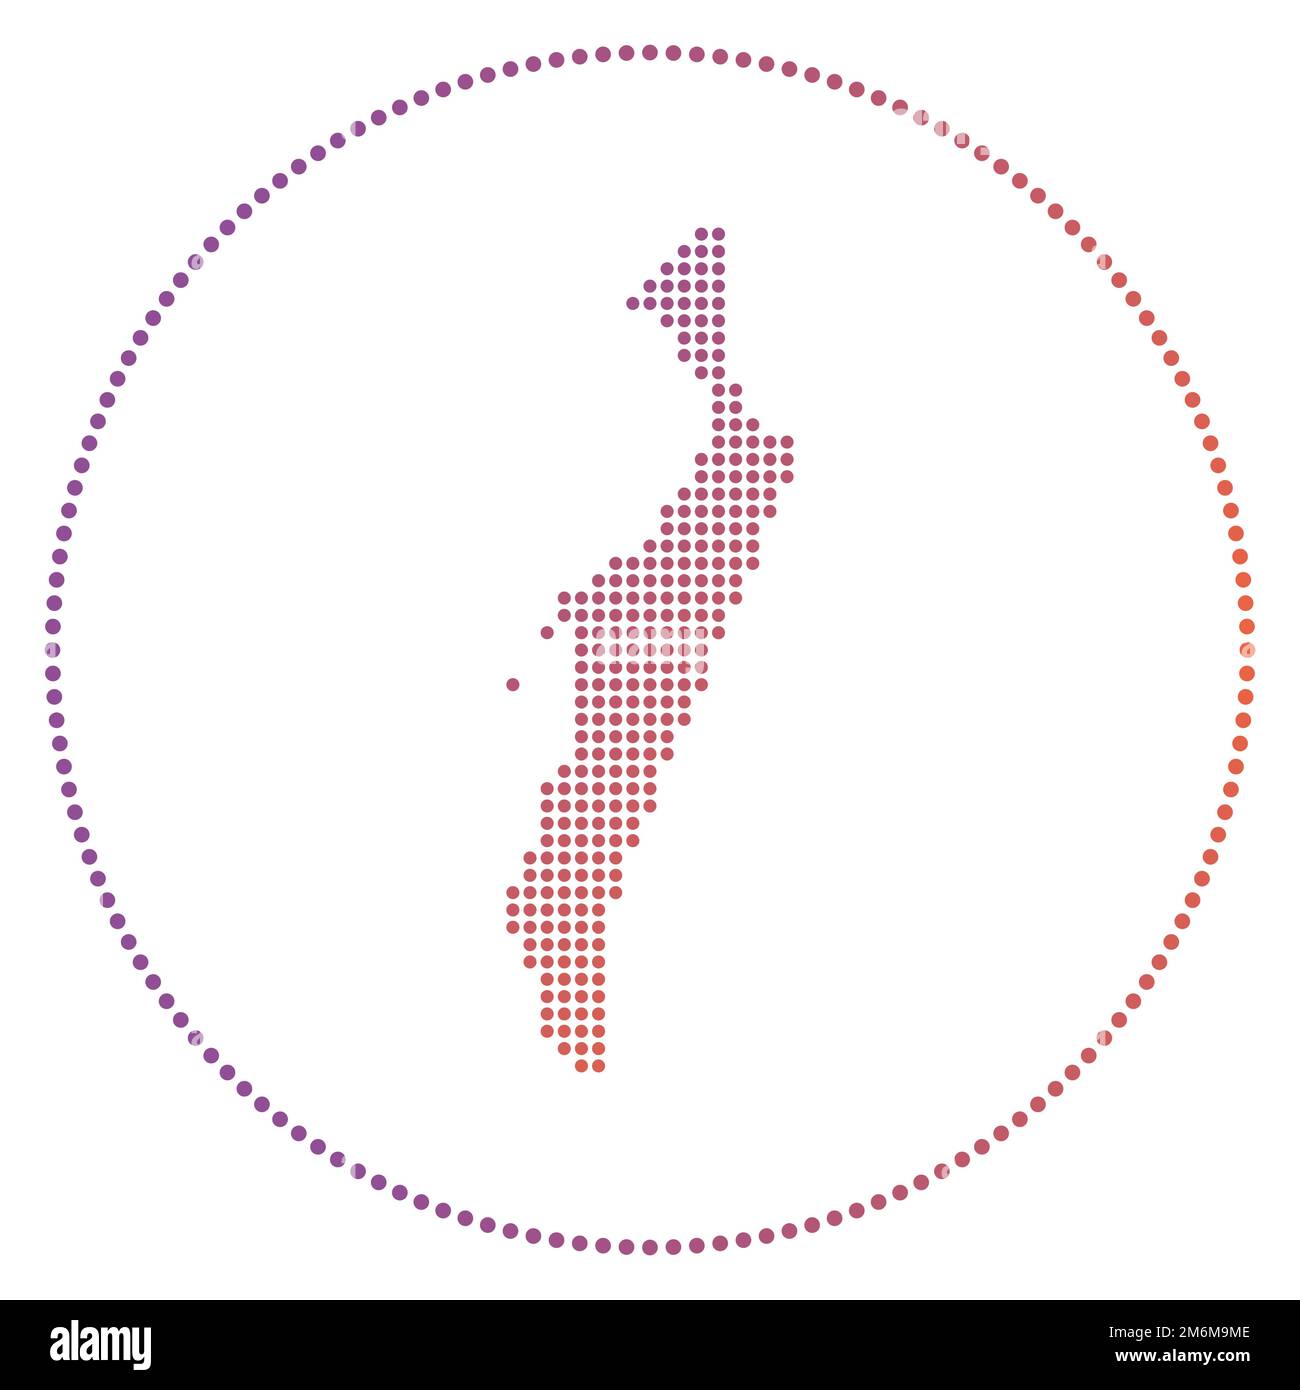 Digitales Abzeichen von Fraser Island. Gepunktete Karte von Fraser Island im Kreis. Tech-Symbol mit abgestuften Punkten. Stilvolle Vektordarstellung. Stock Vektor